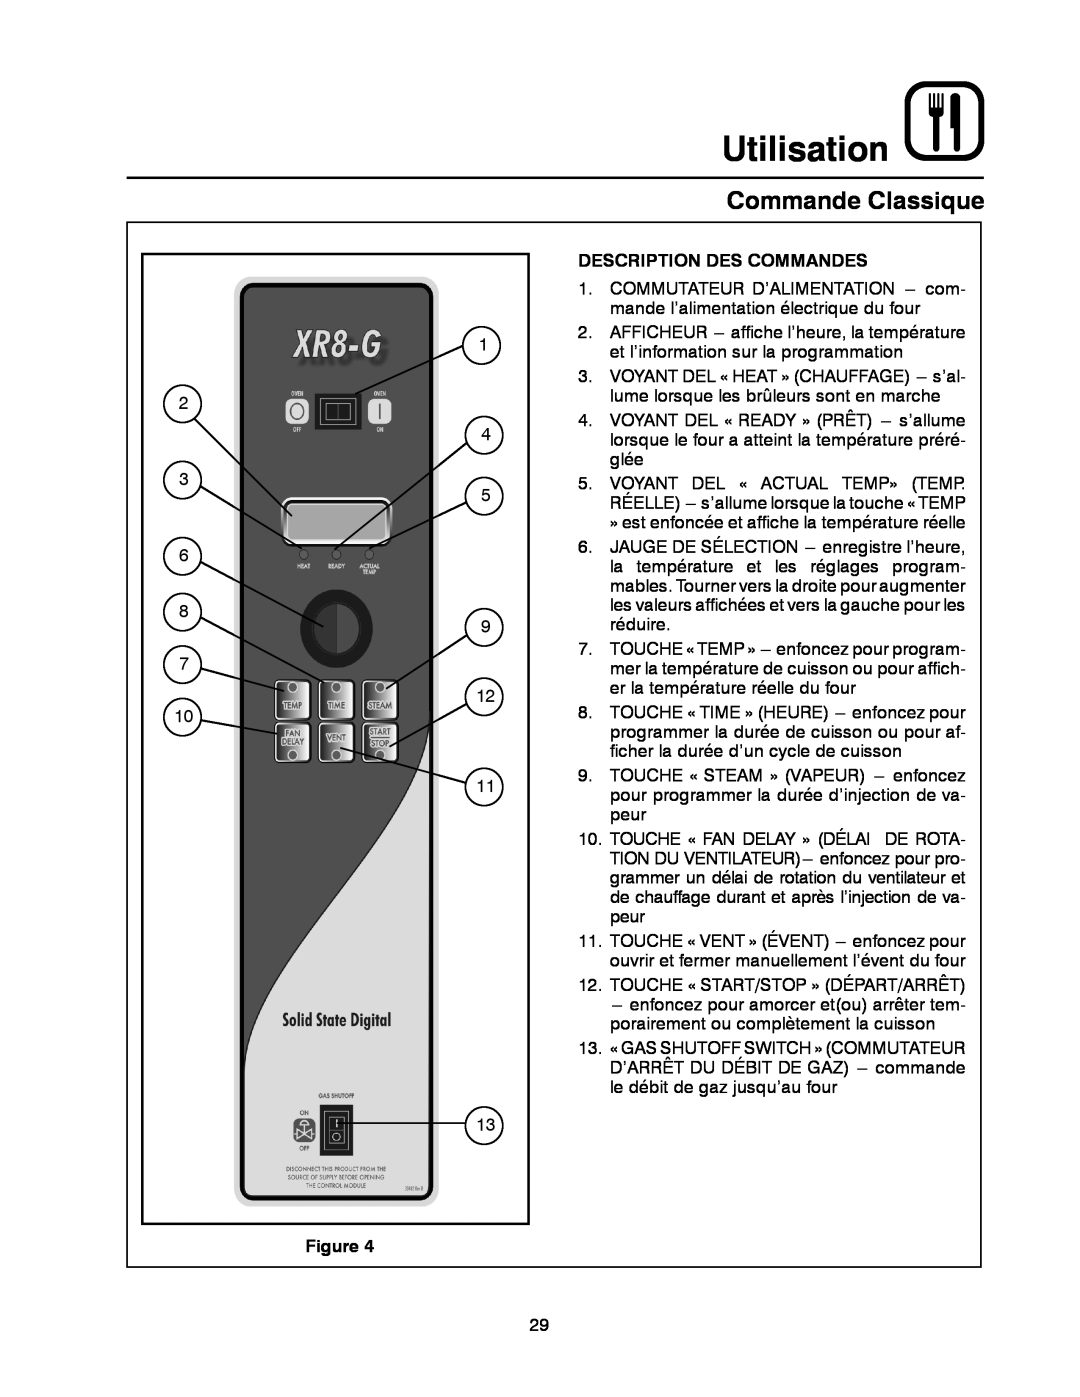 Blodgett XR8-G manual Commande Classique, Utilisation, Description Des Commandes 